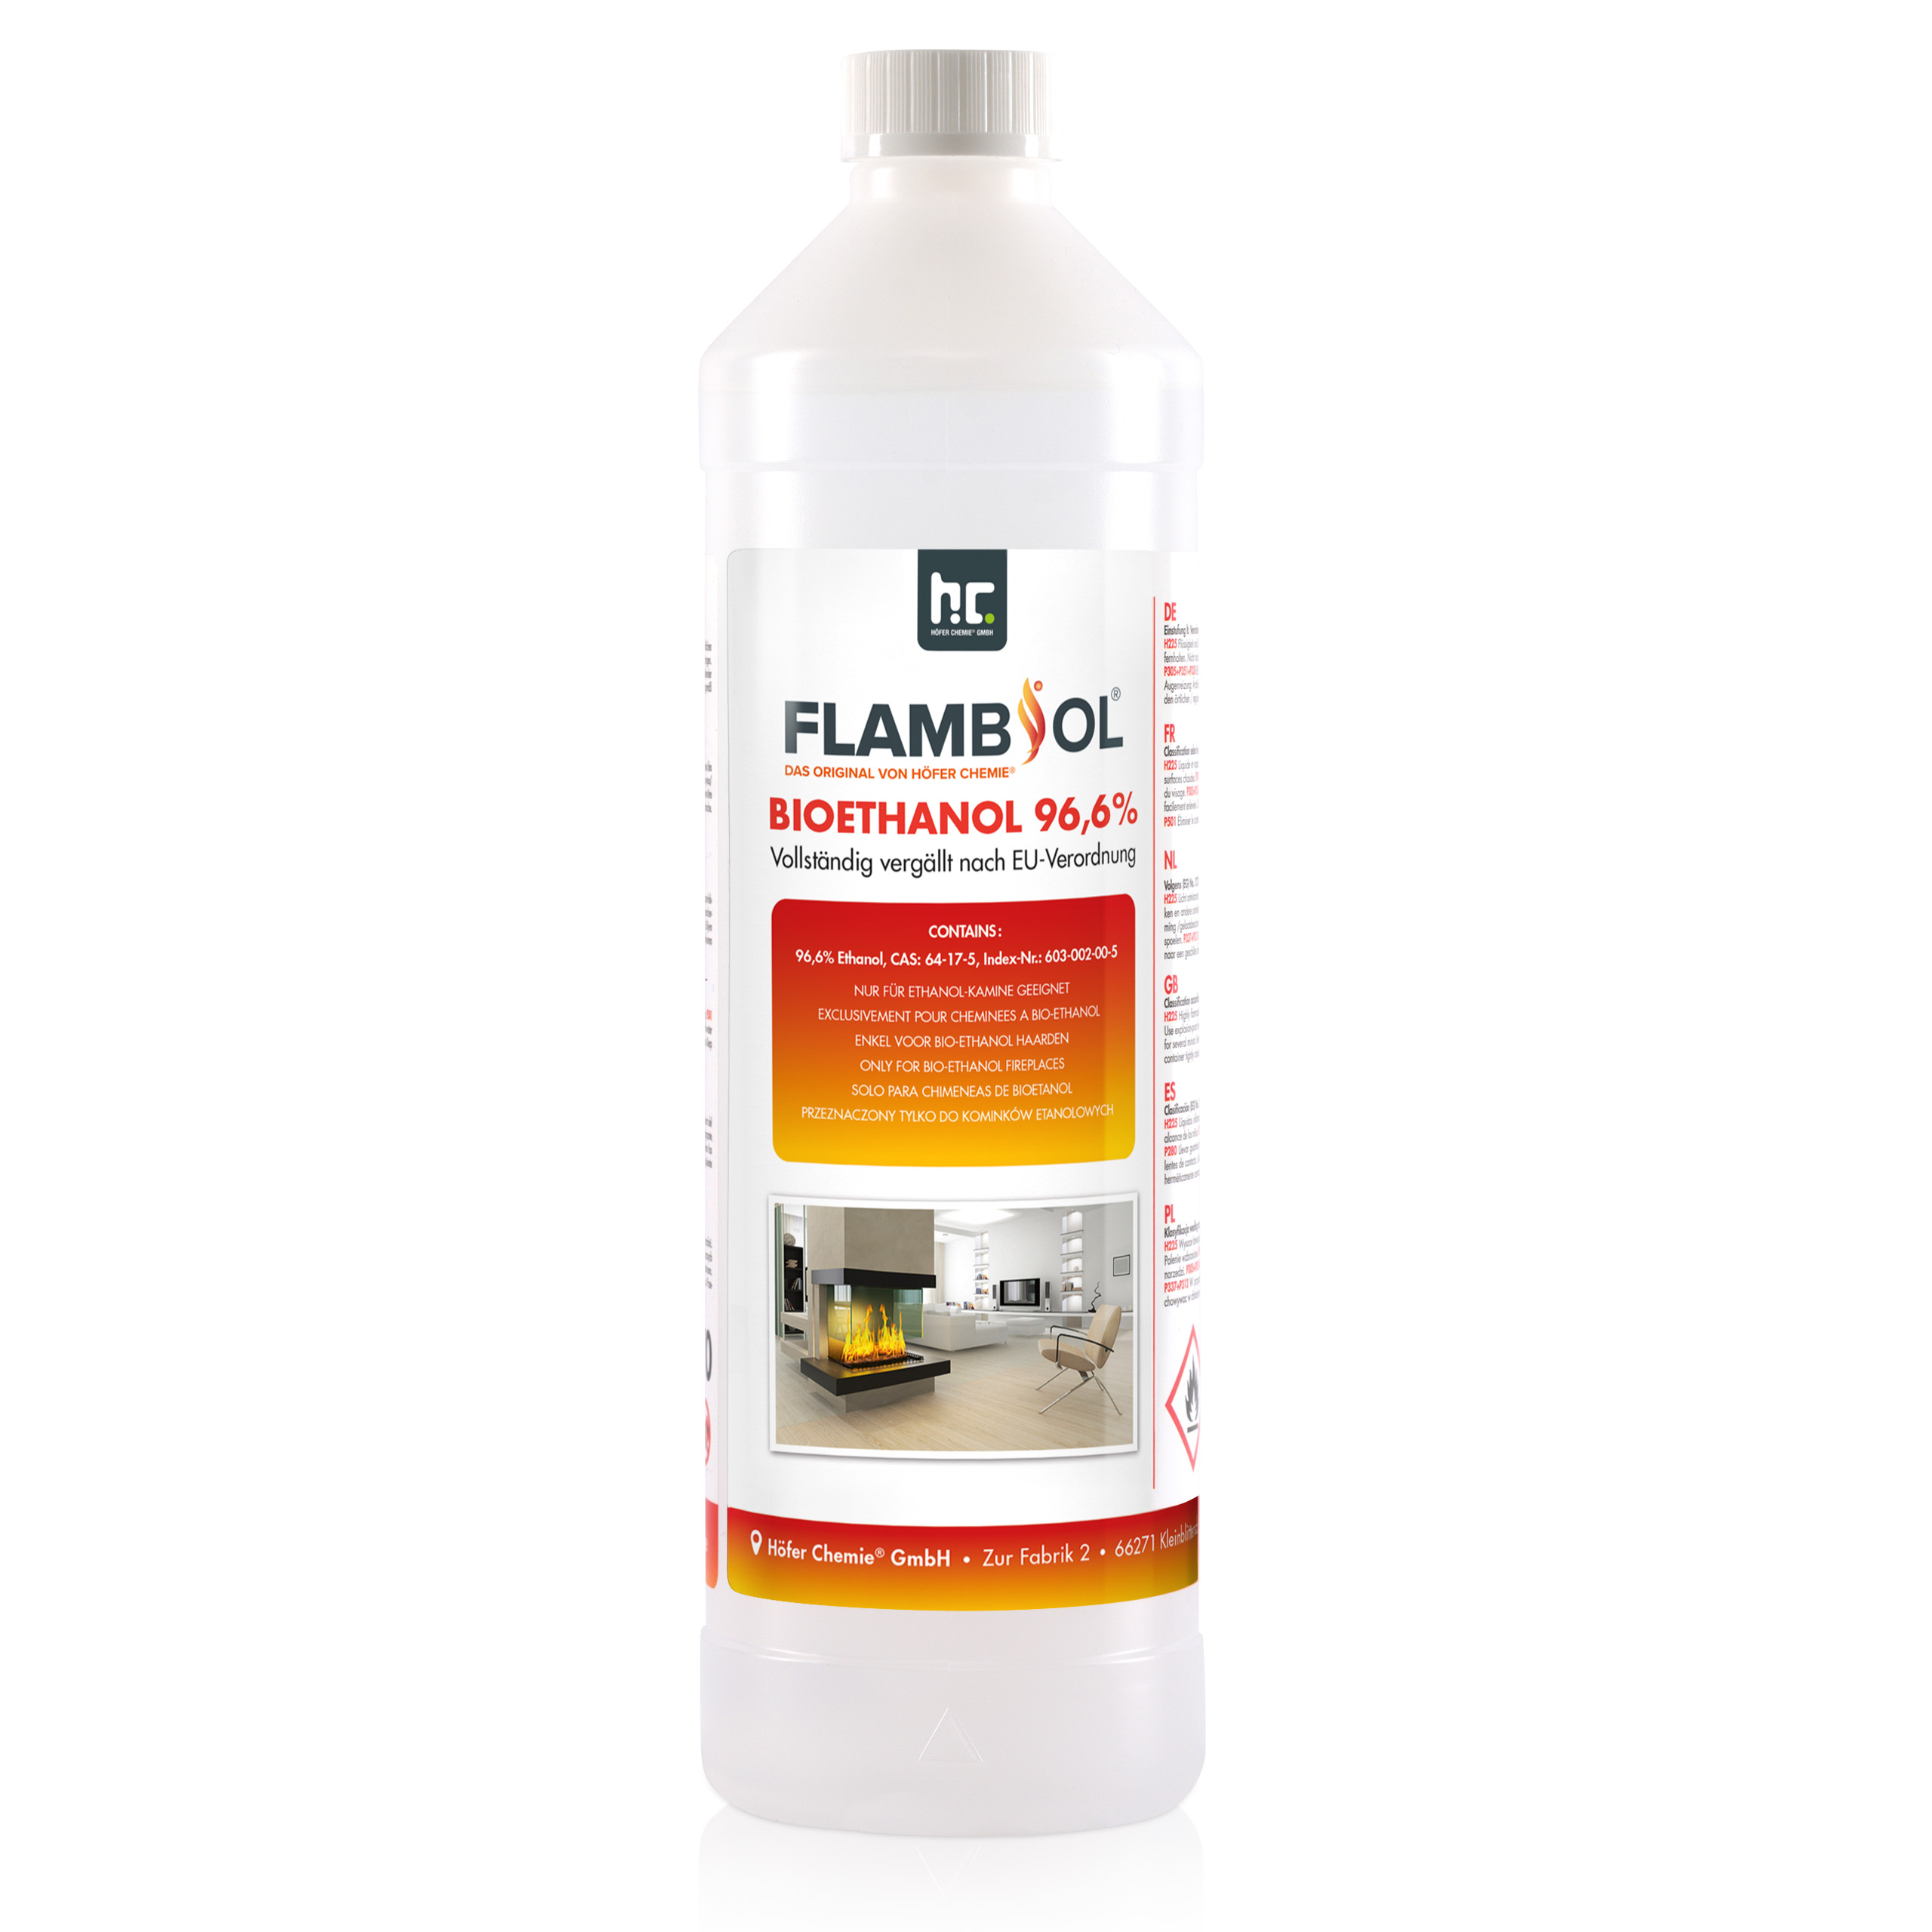 1 L FLAMBIOL® Bioéthanol 96,6% Premium (en bouteille) pour cheminée de table à l'éthanol